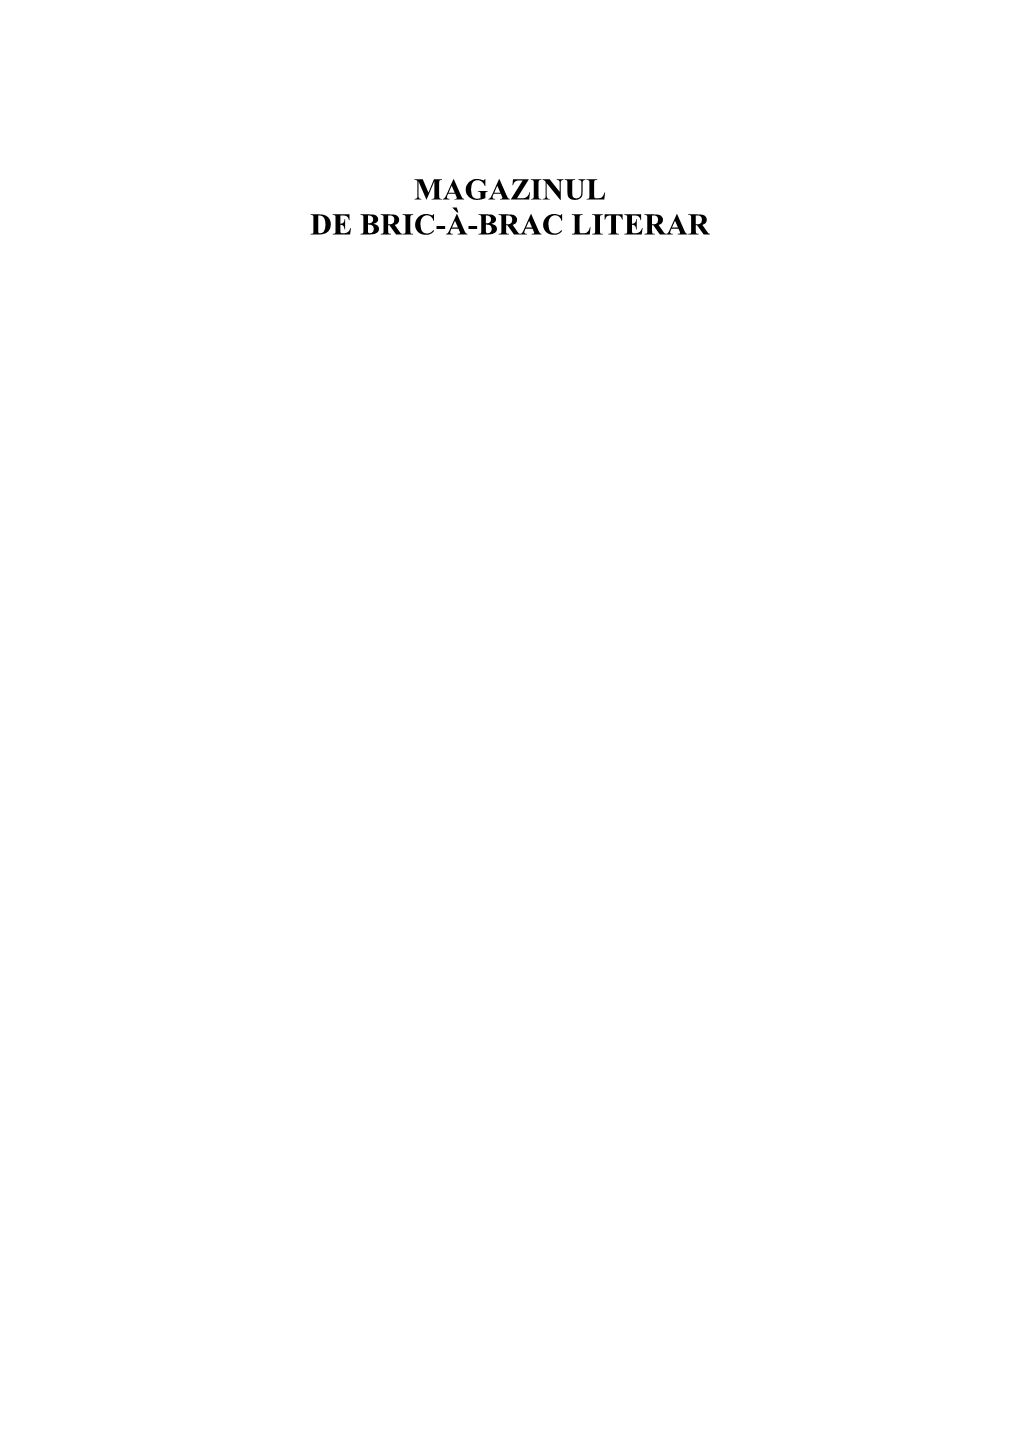 MAGAZINUL DE BRIC-À-BRAC LITERAR Editor: Ioan Crăciun Tehnoredactare: Gheorghe Chiţa Copertă: Cristian Dinu